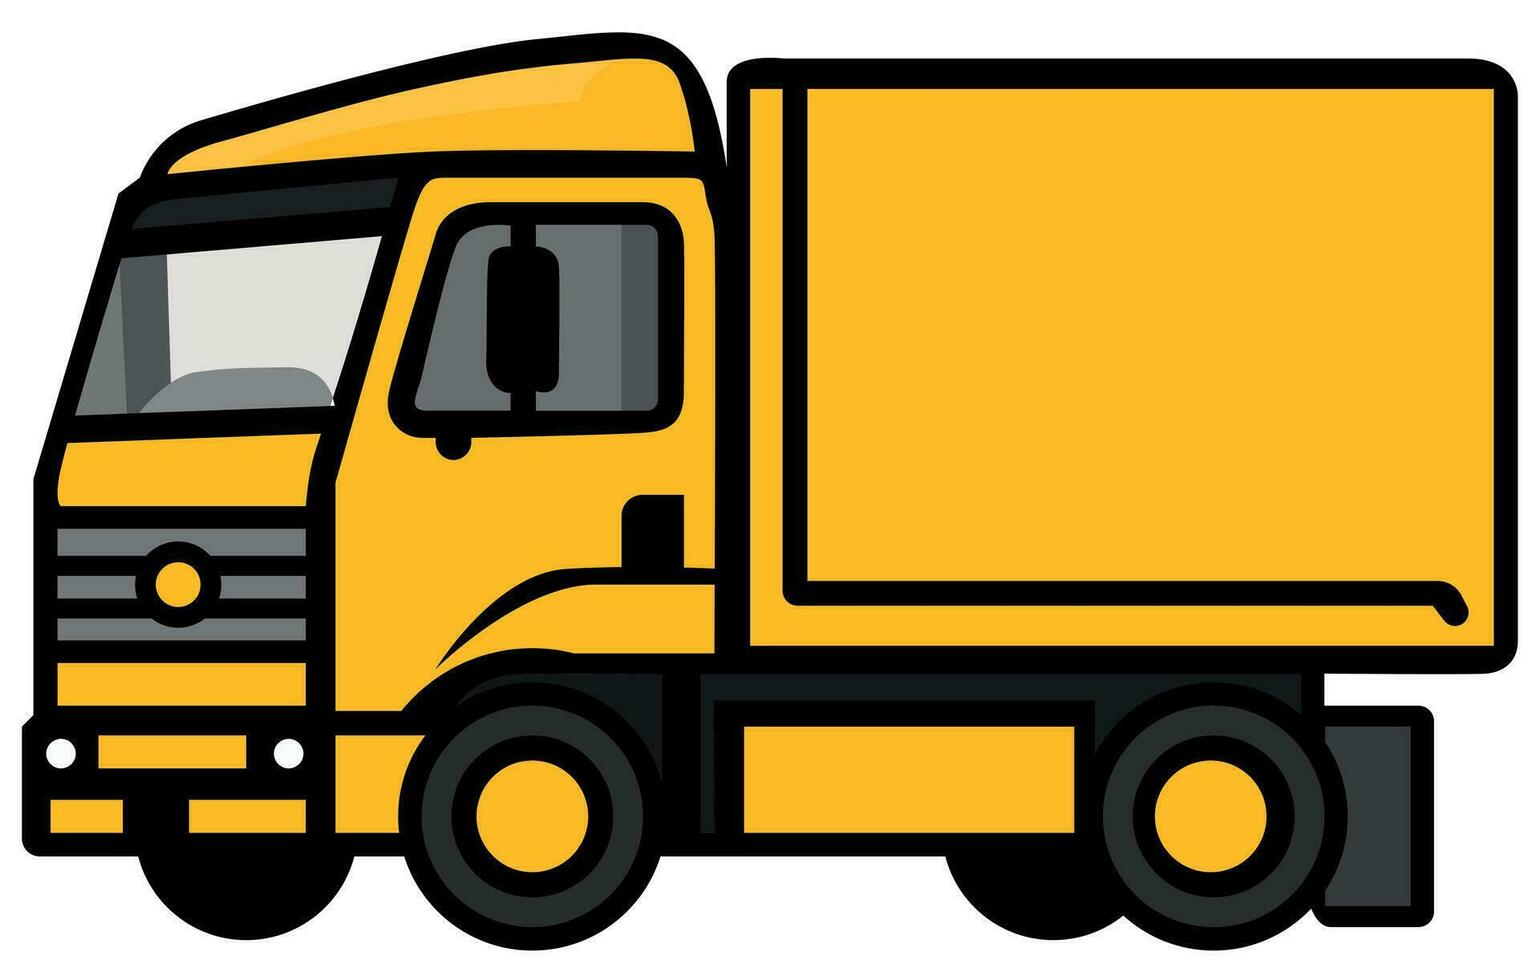 impostato linea icone di camion, vettore pesante camion ,vettore camion trailer illustratore